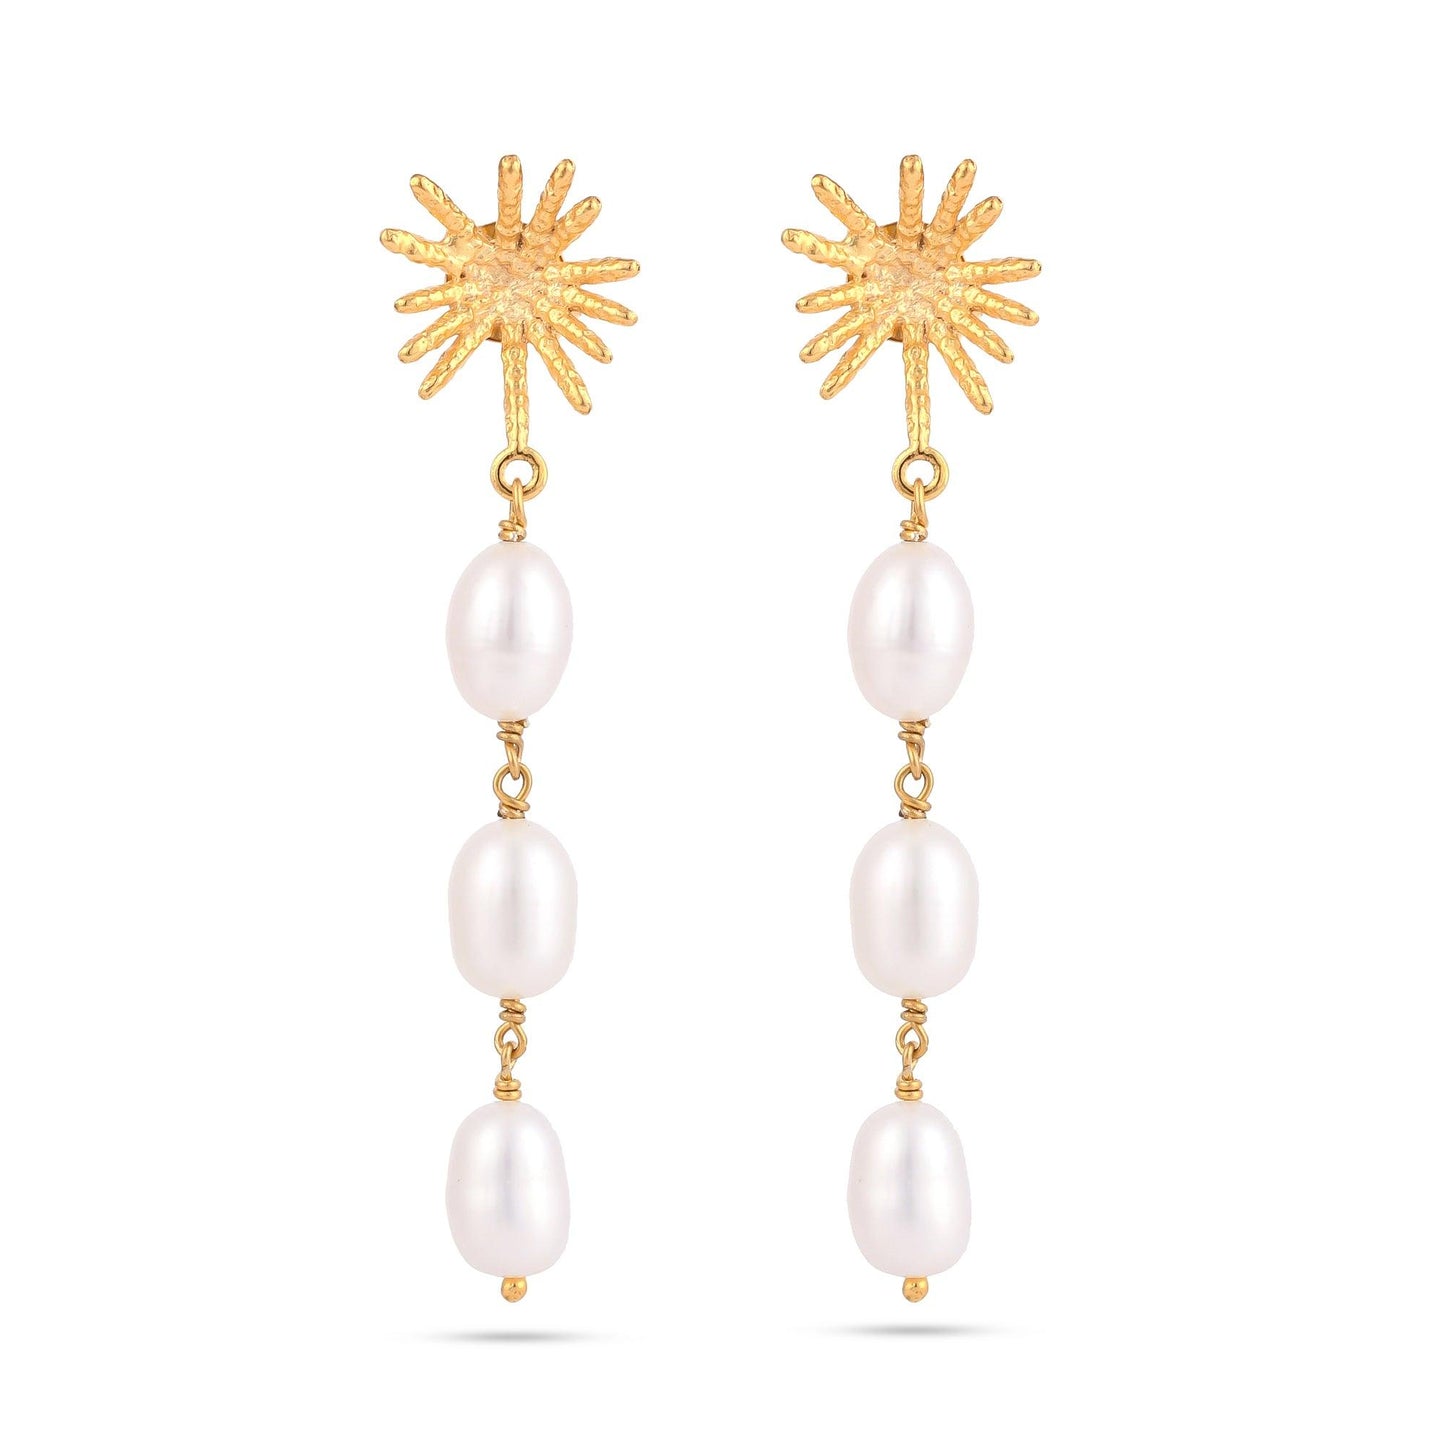 Bohemian-Flower-Pearl-Drop-Silver-Earrings-For-Women